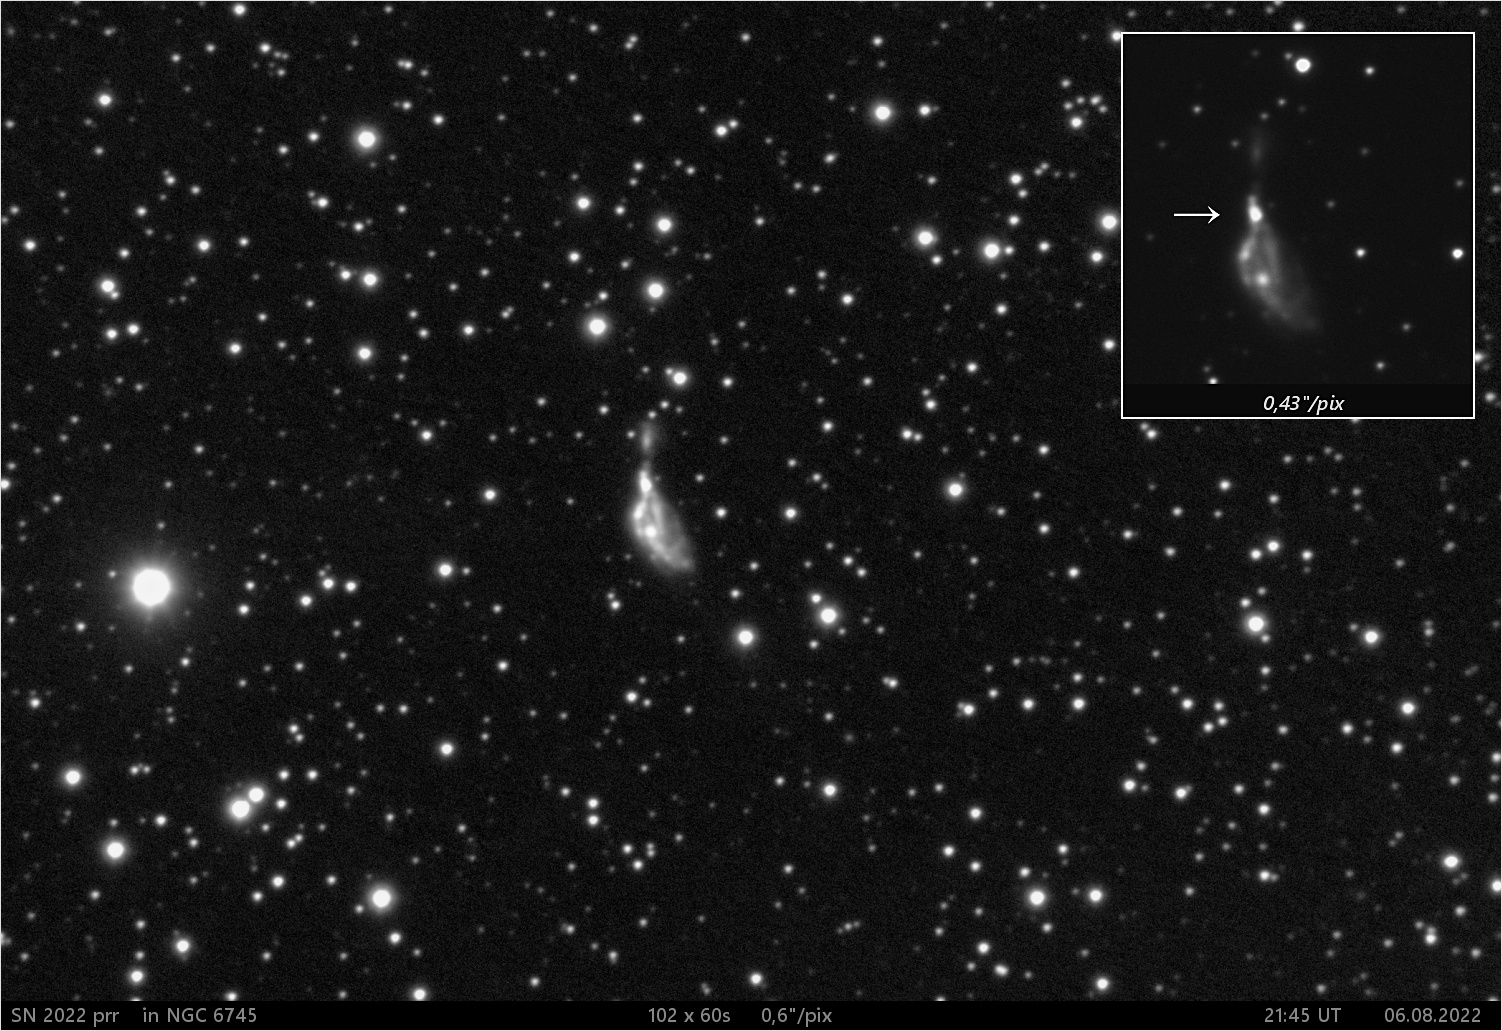 SN 2022 prr  v NGC6745